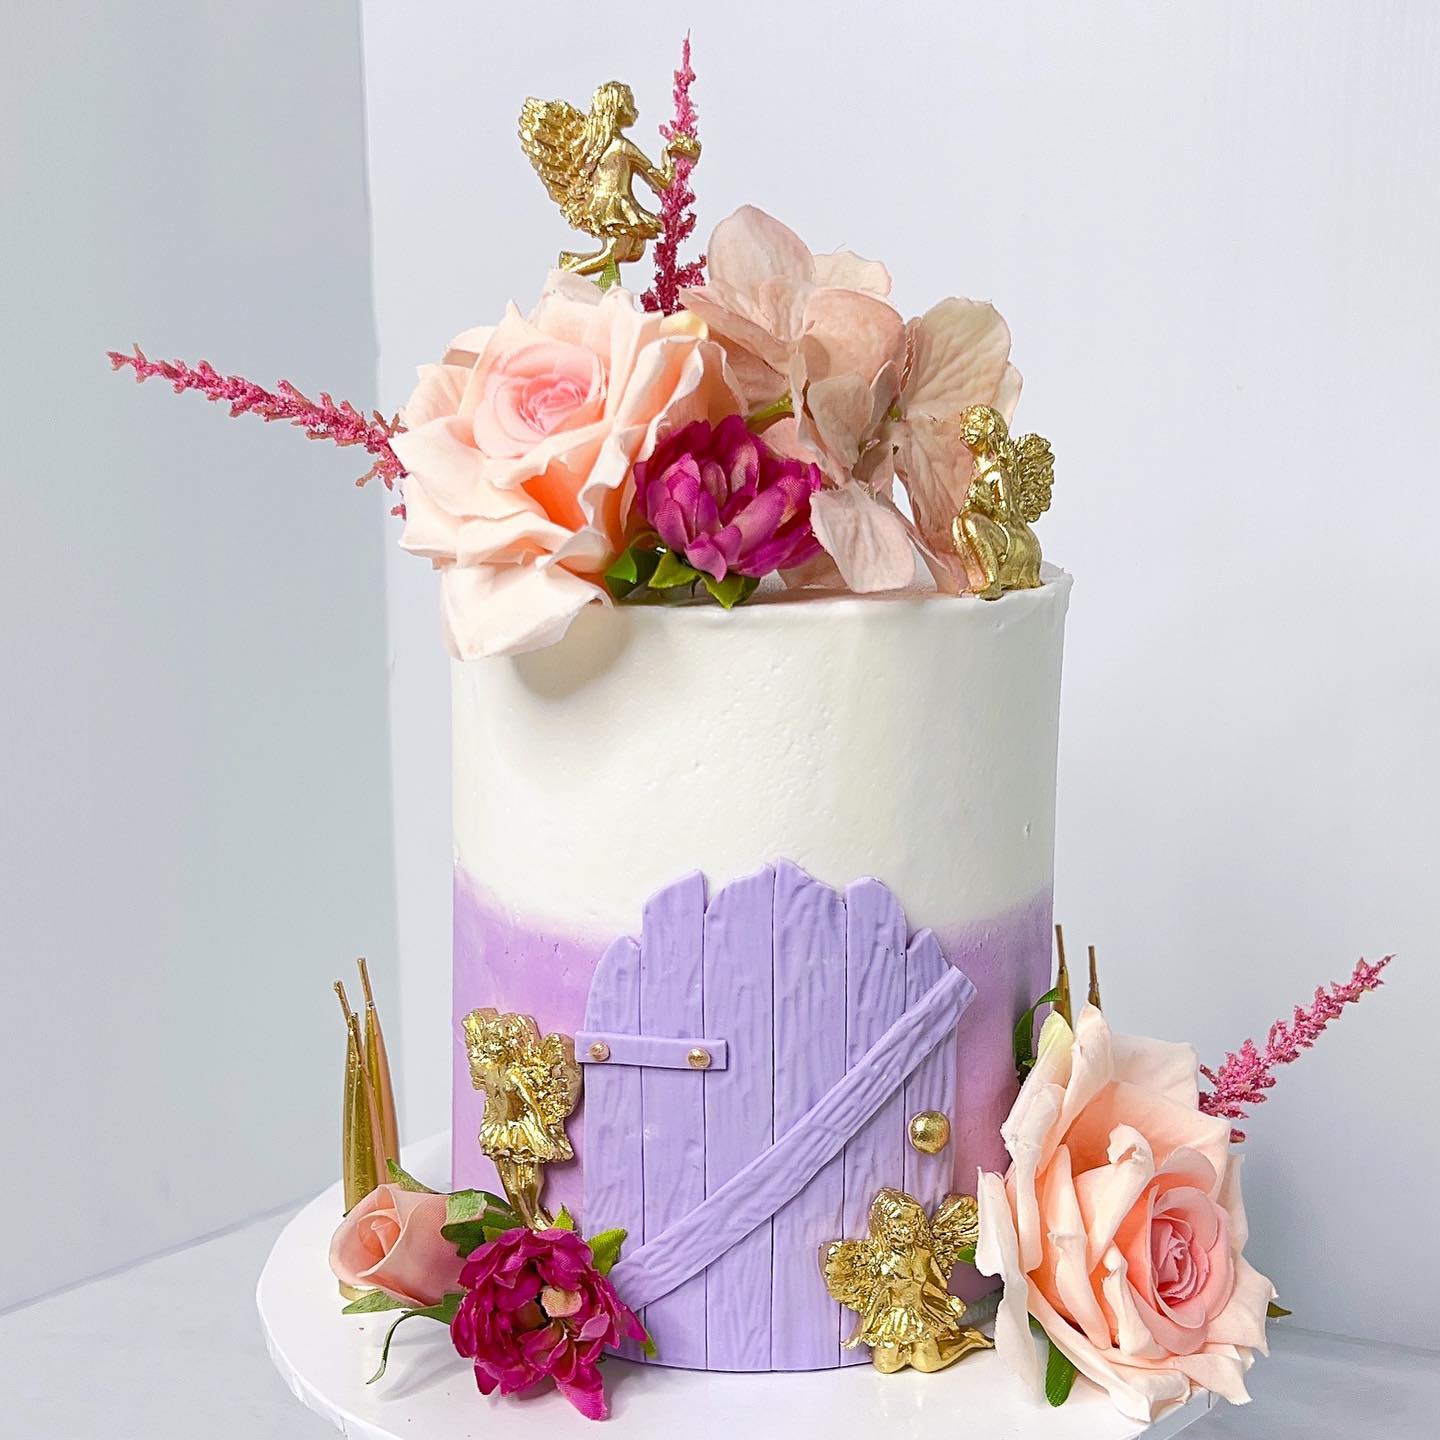 Nigella Lawson's fairy cakes recipe | Cosy Life